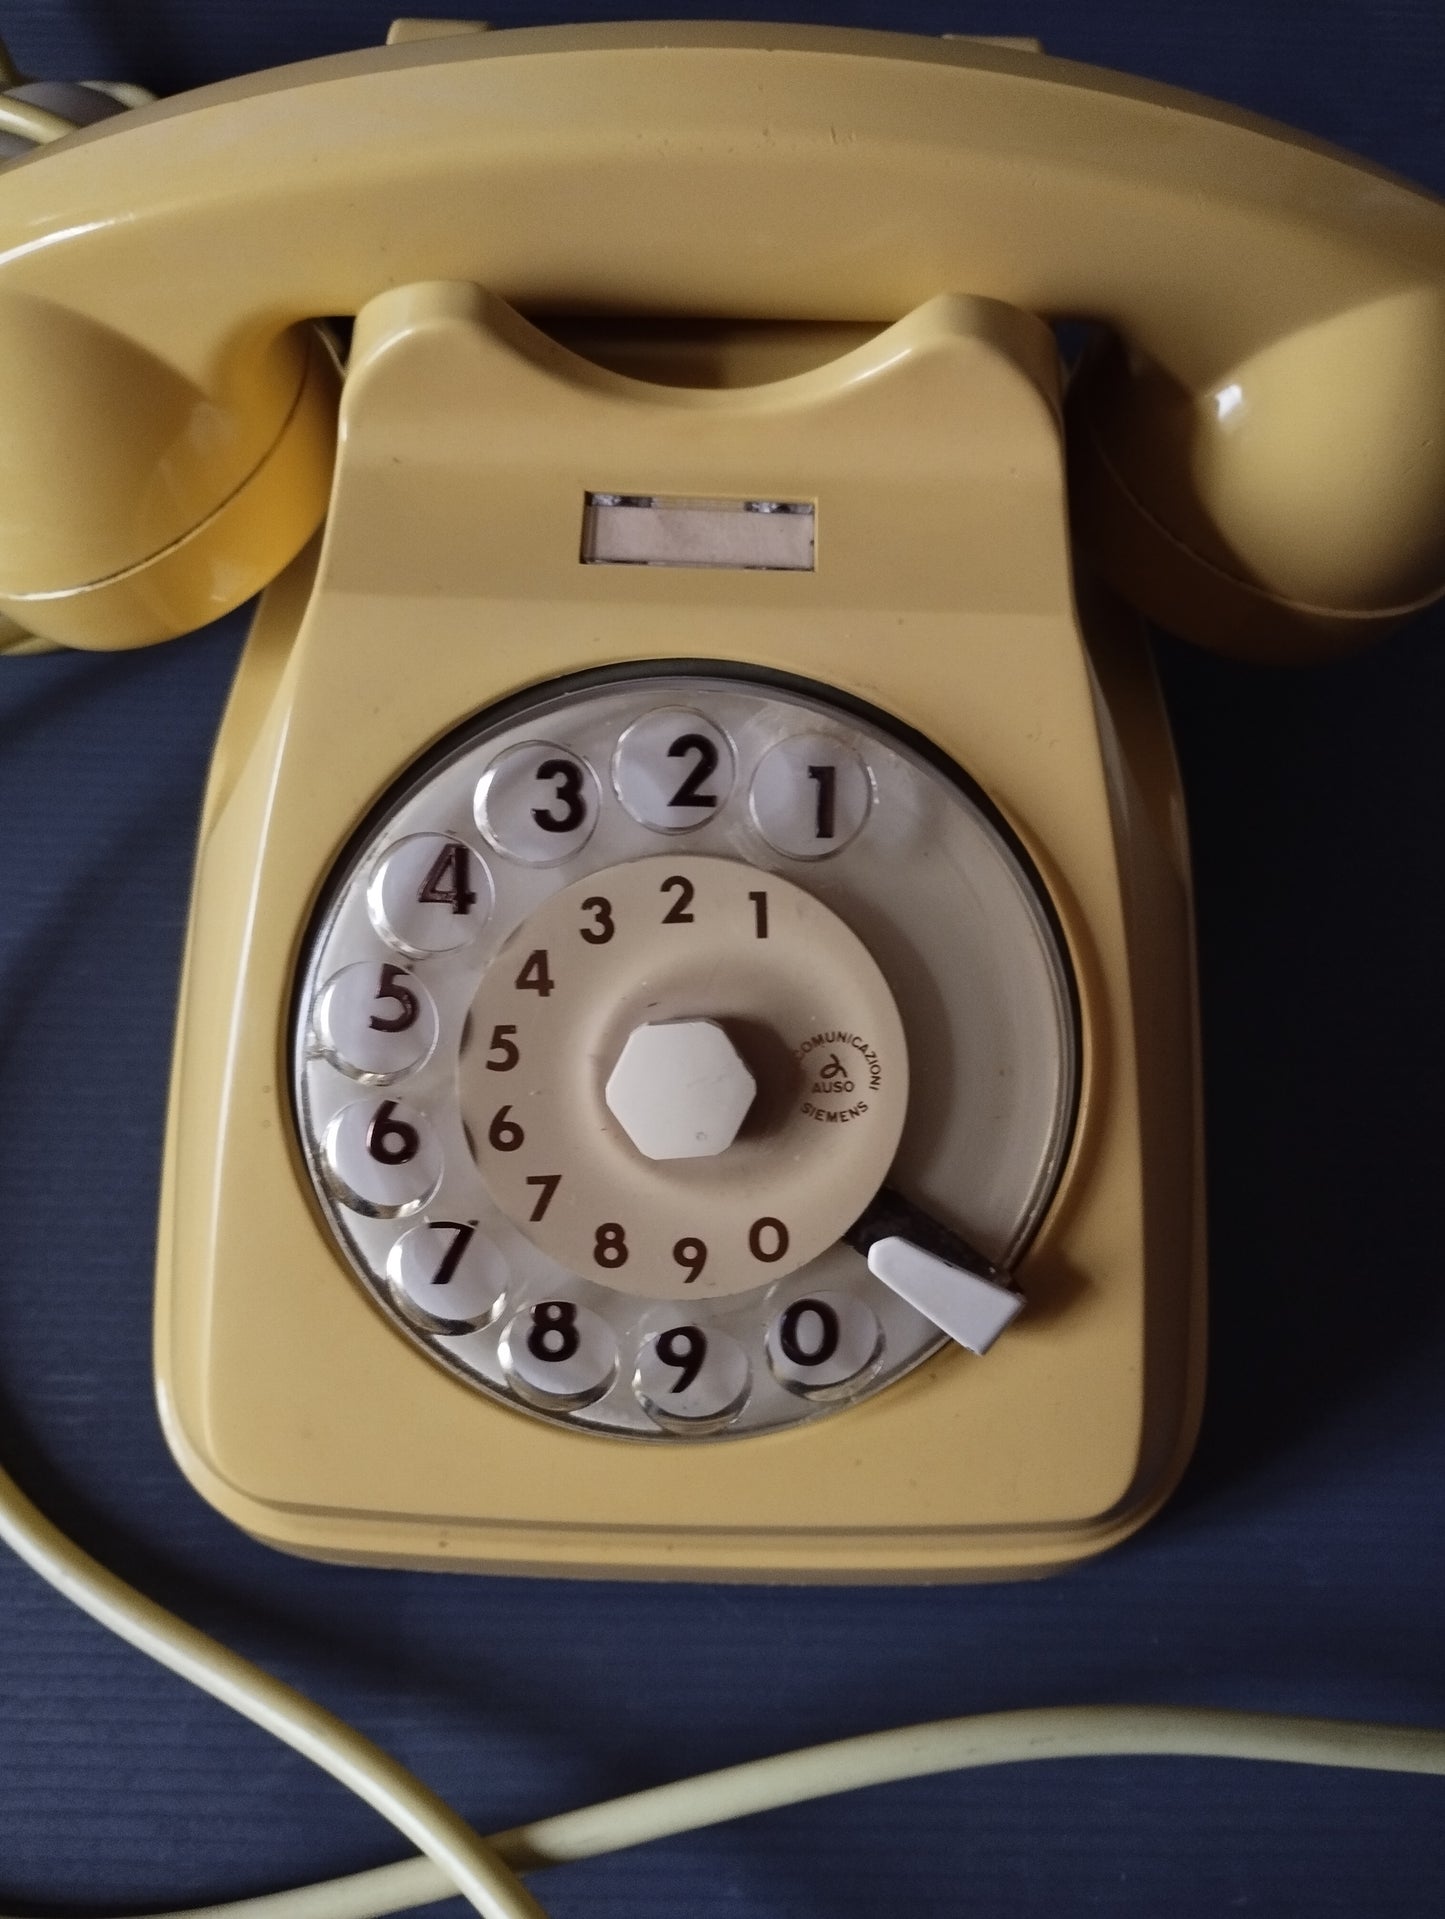 Telefono SIP Vintage

Colore giallo